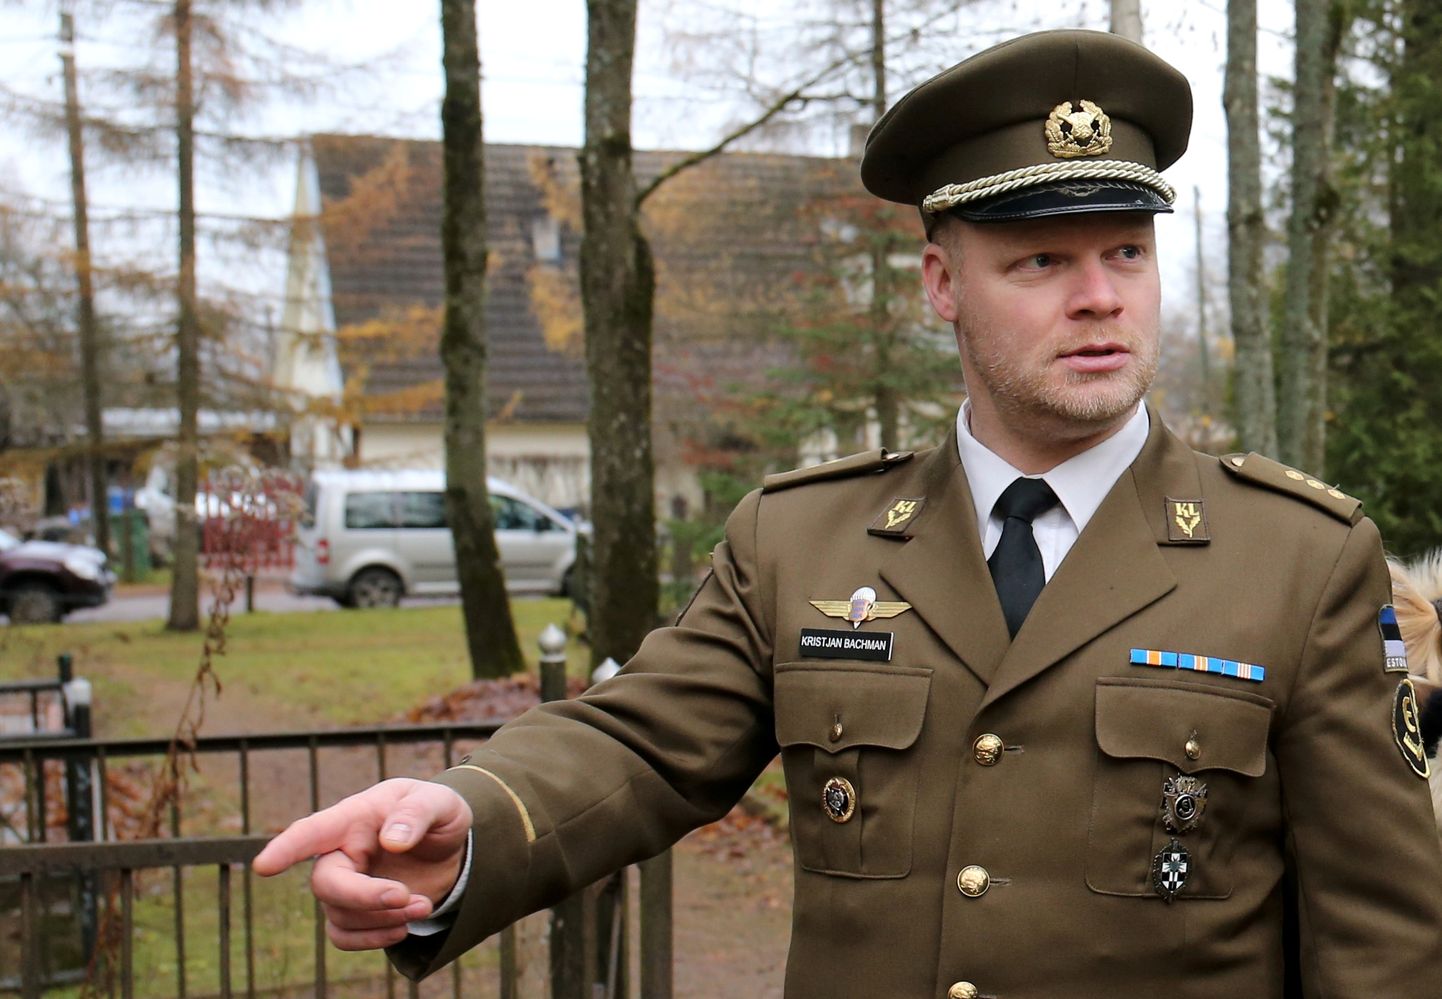 Kristjan Bachman korraldas novembris 2019 Raadi sõjaväekalmistul Vabadusristi kavaleri kolonel Siegfried Pindingu hauaplatsi korrastustöid, millega kaasnes taasõnnistamine.